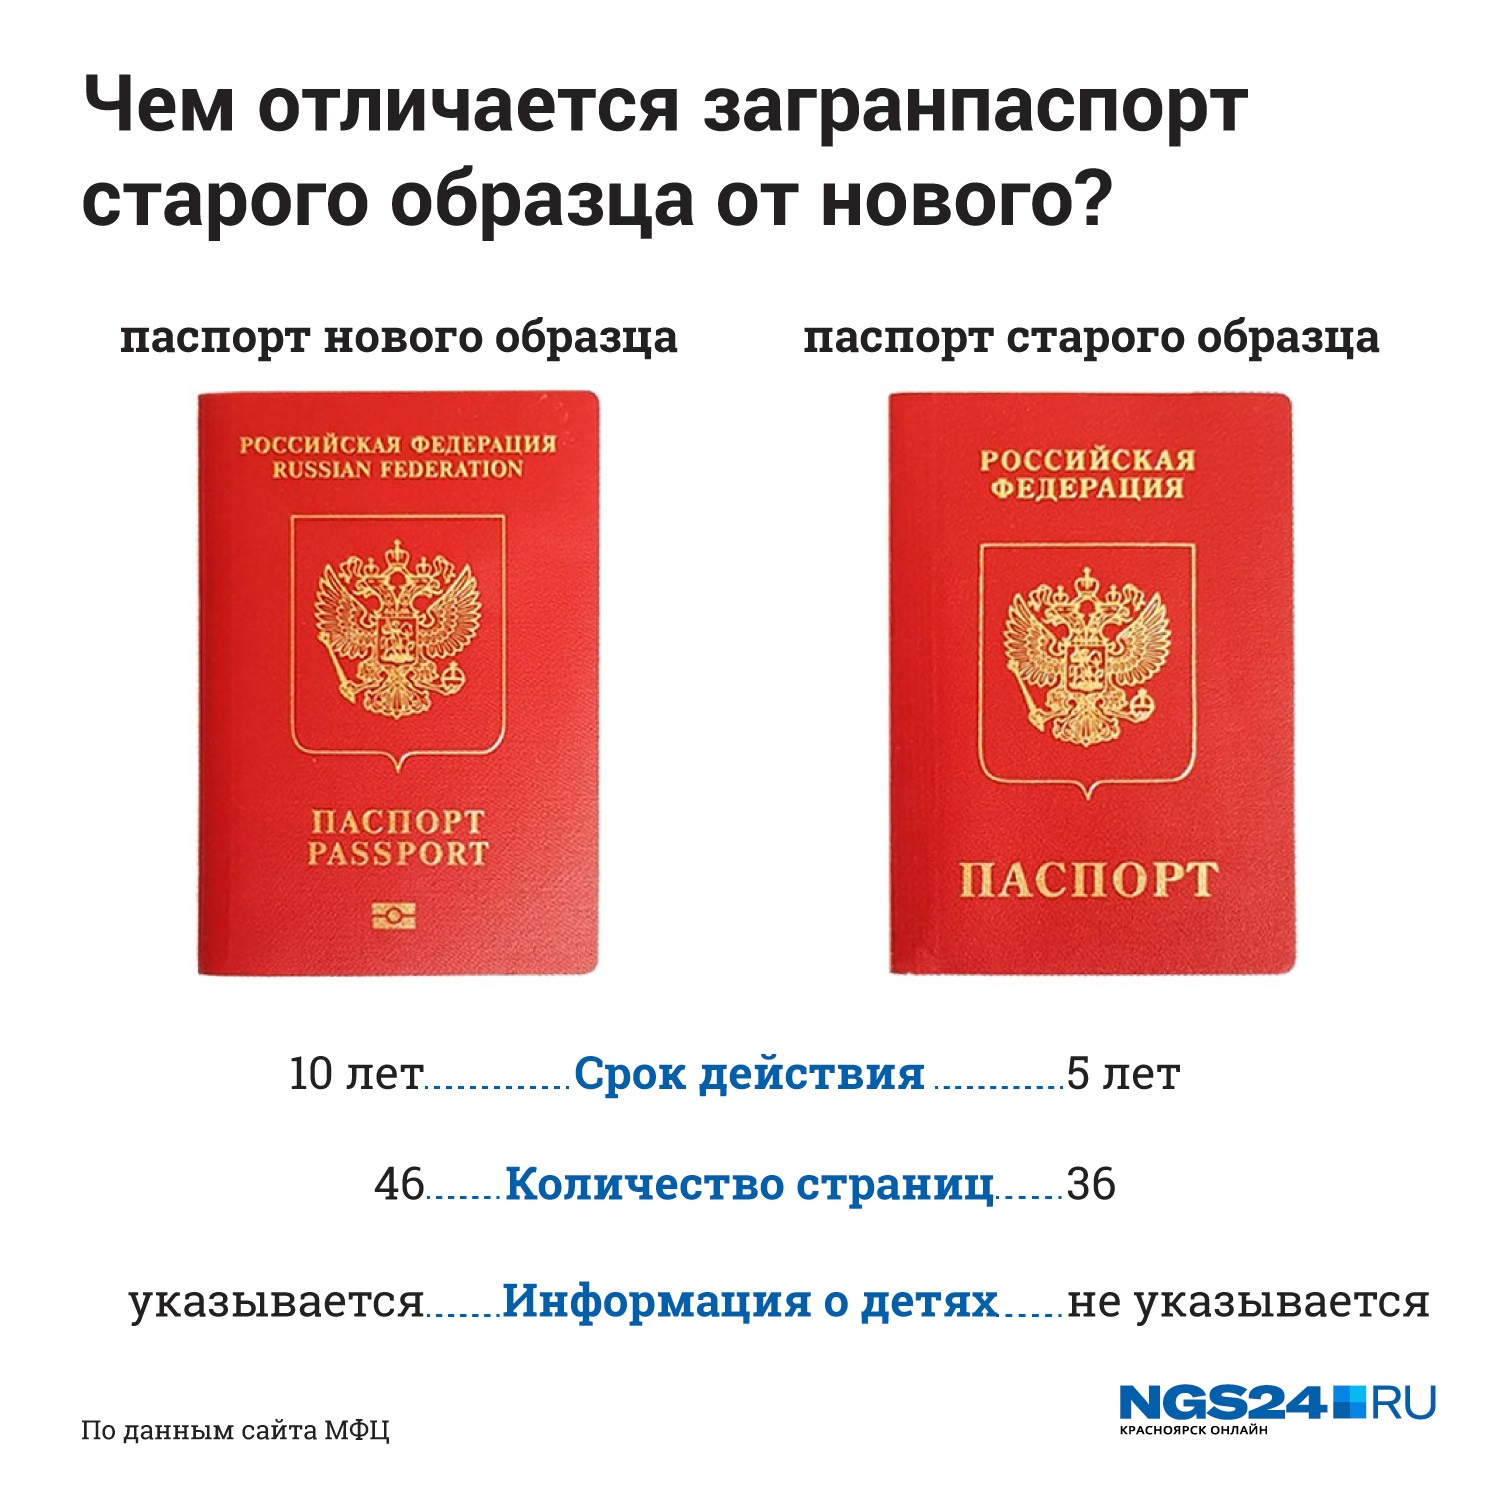 Как оформить и получить загранпаспорт через госуслуги (gosuslugi.ru — портал в интернете) — инструкция